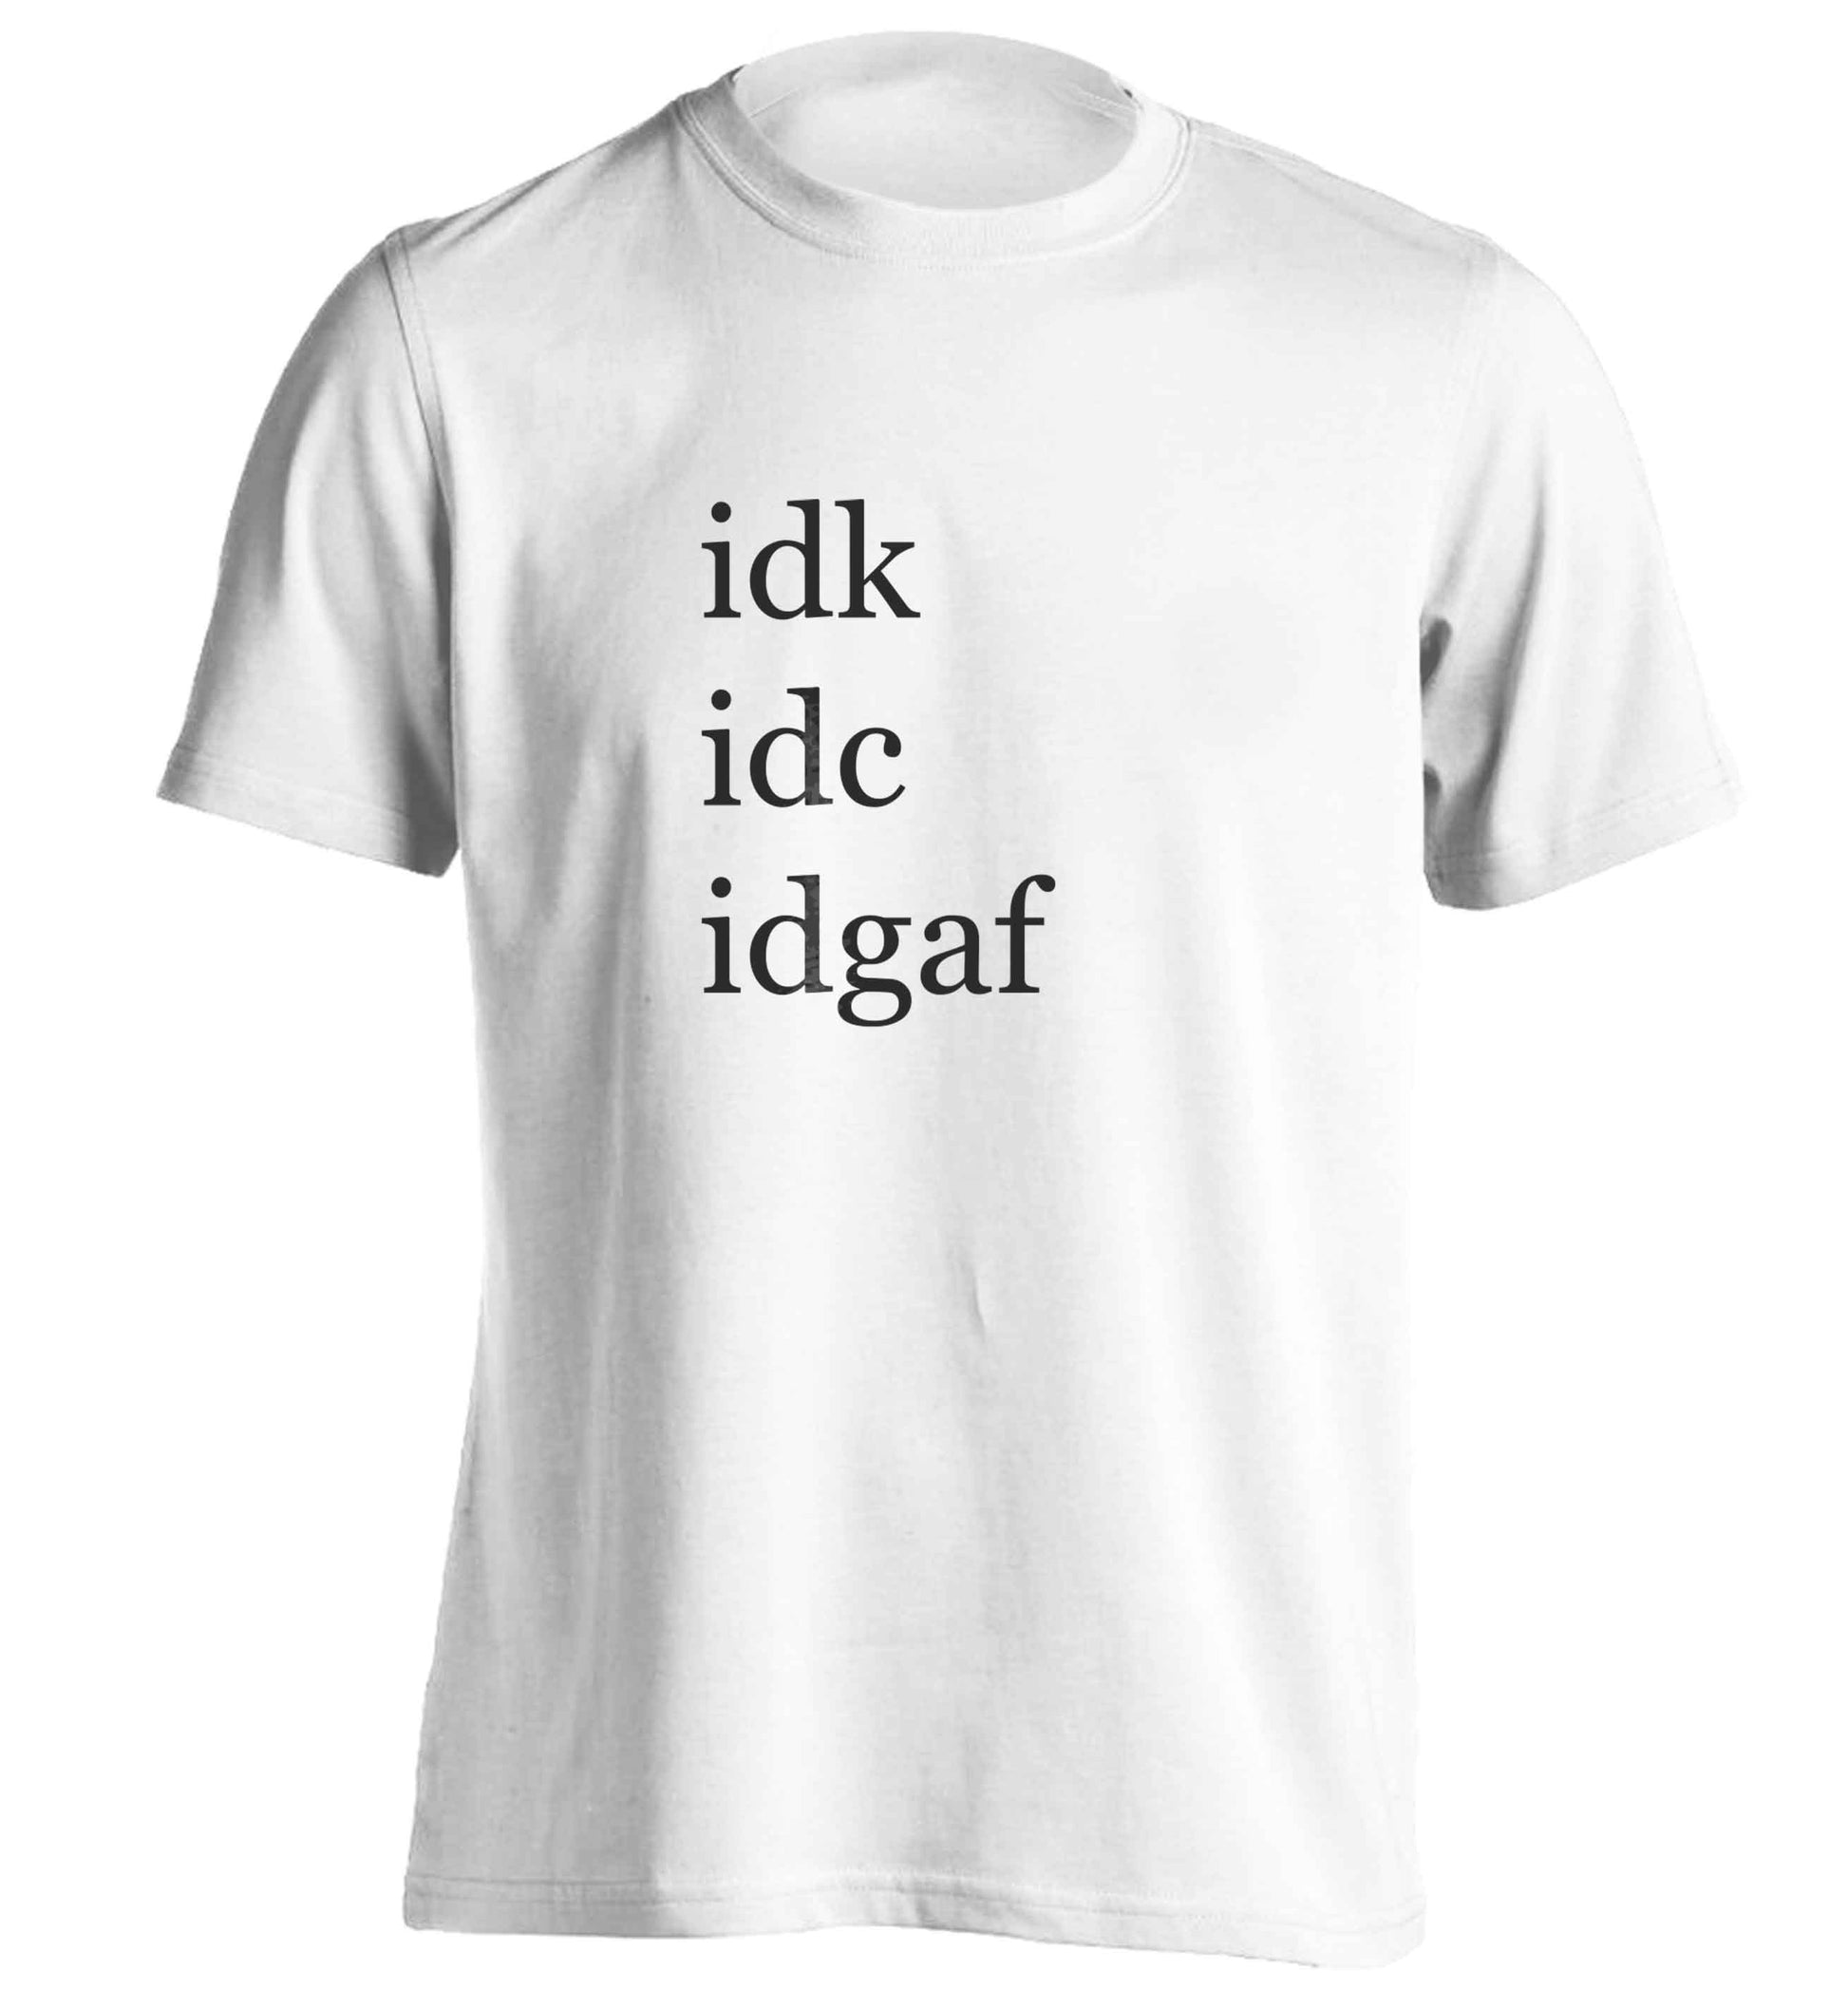 Idk Idc Idgaf adults unisex white Tshirt 2XL